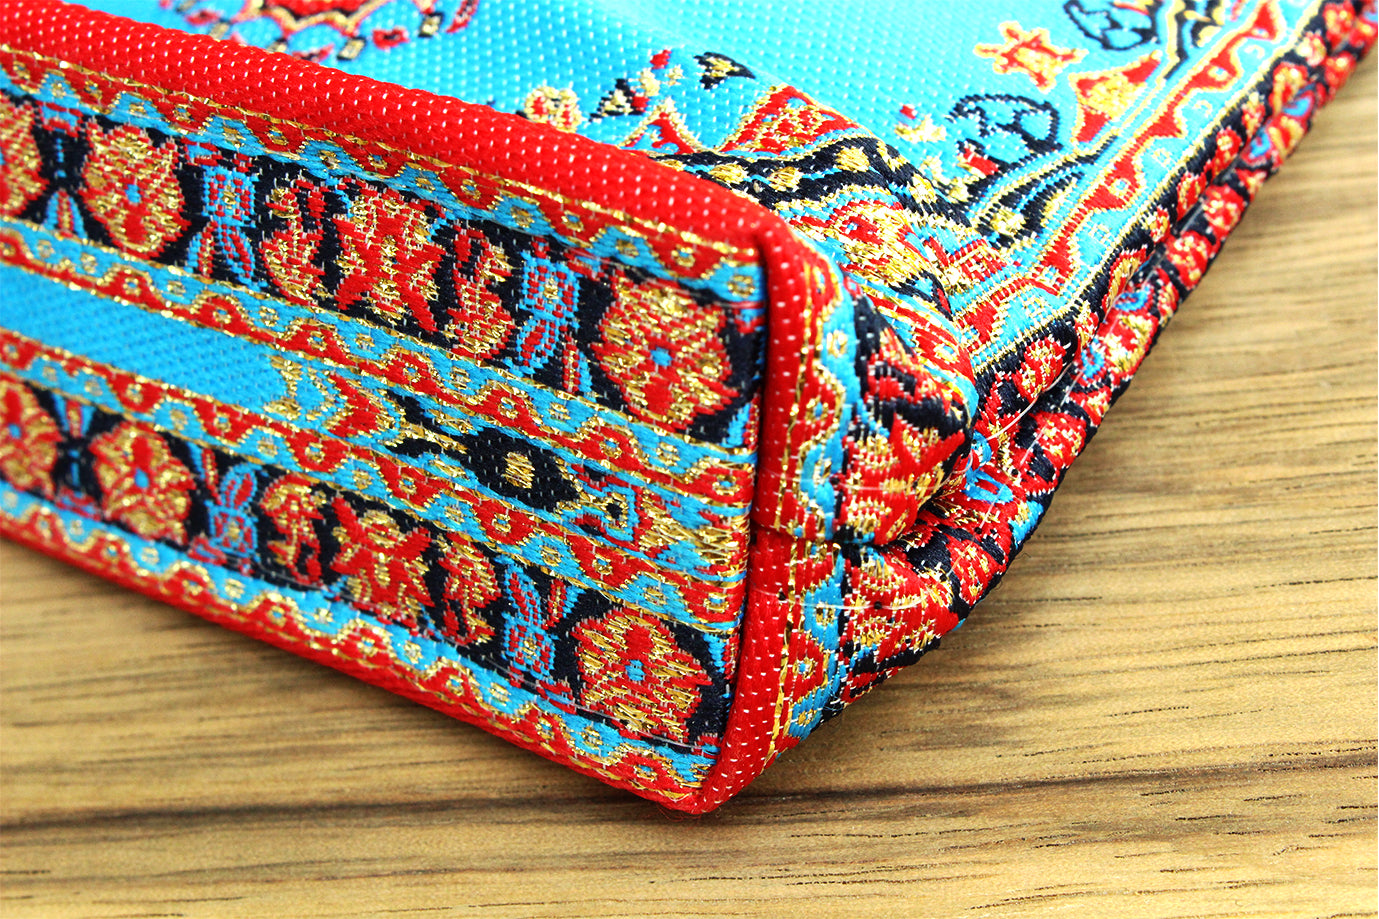 Oriental purse